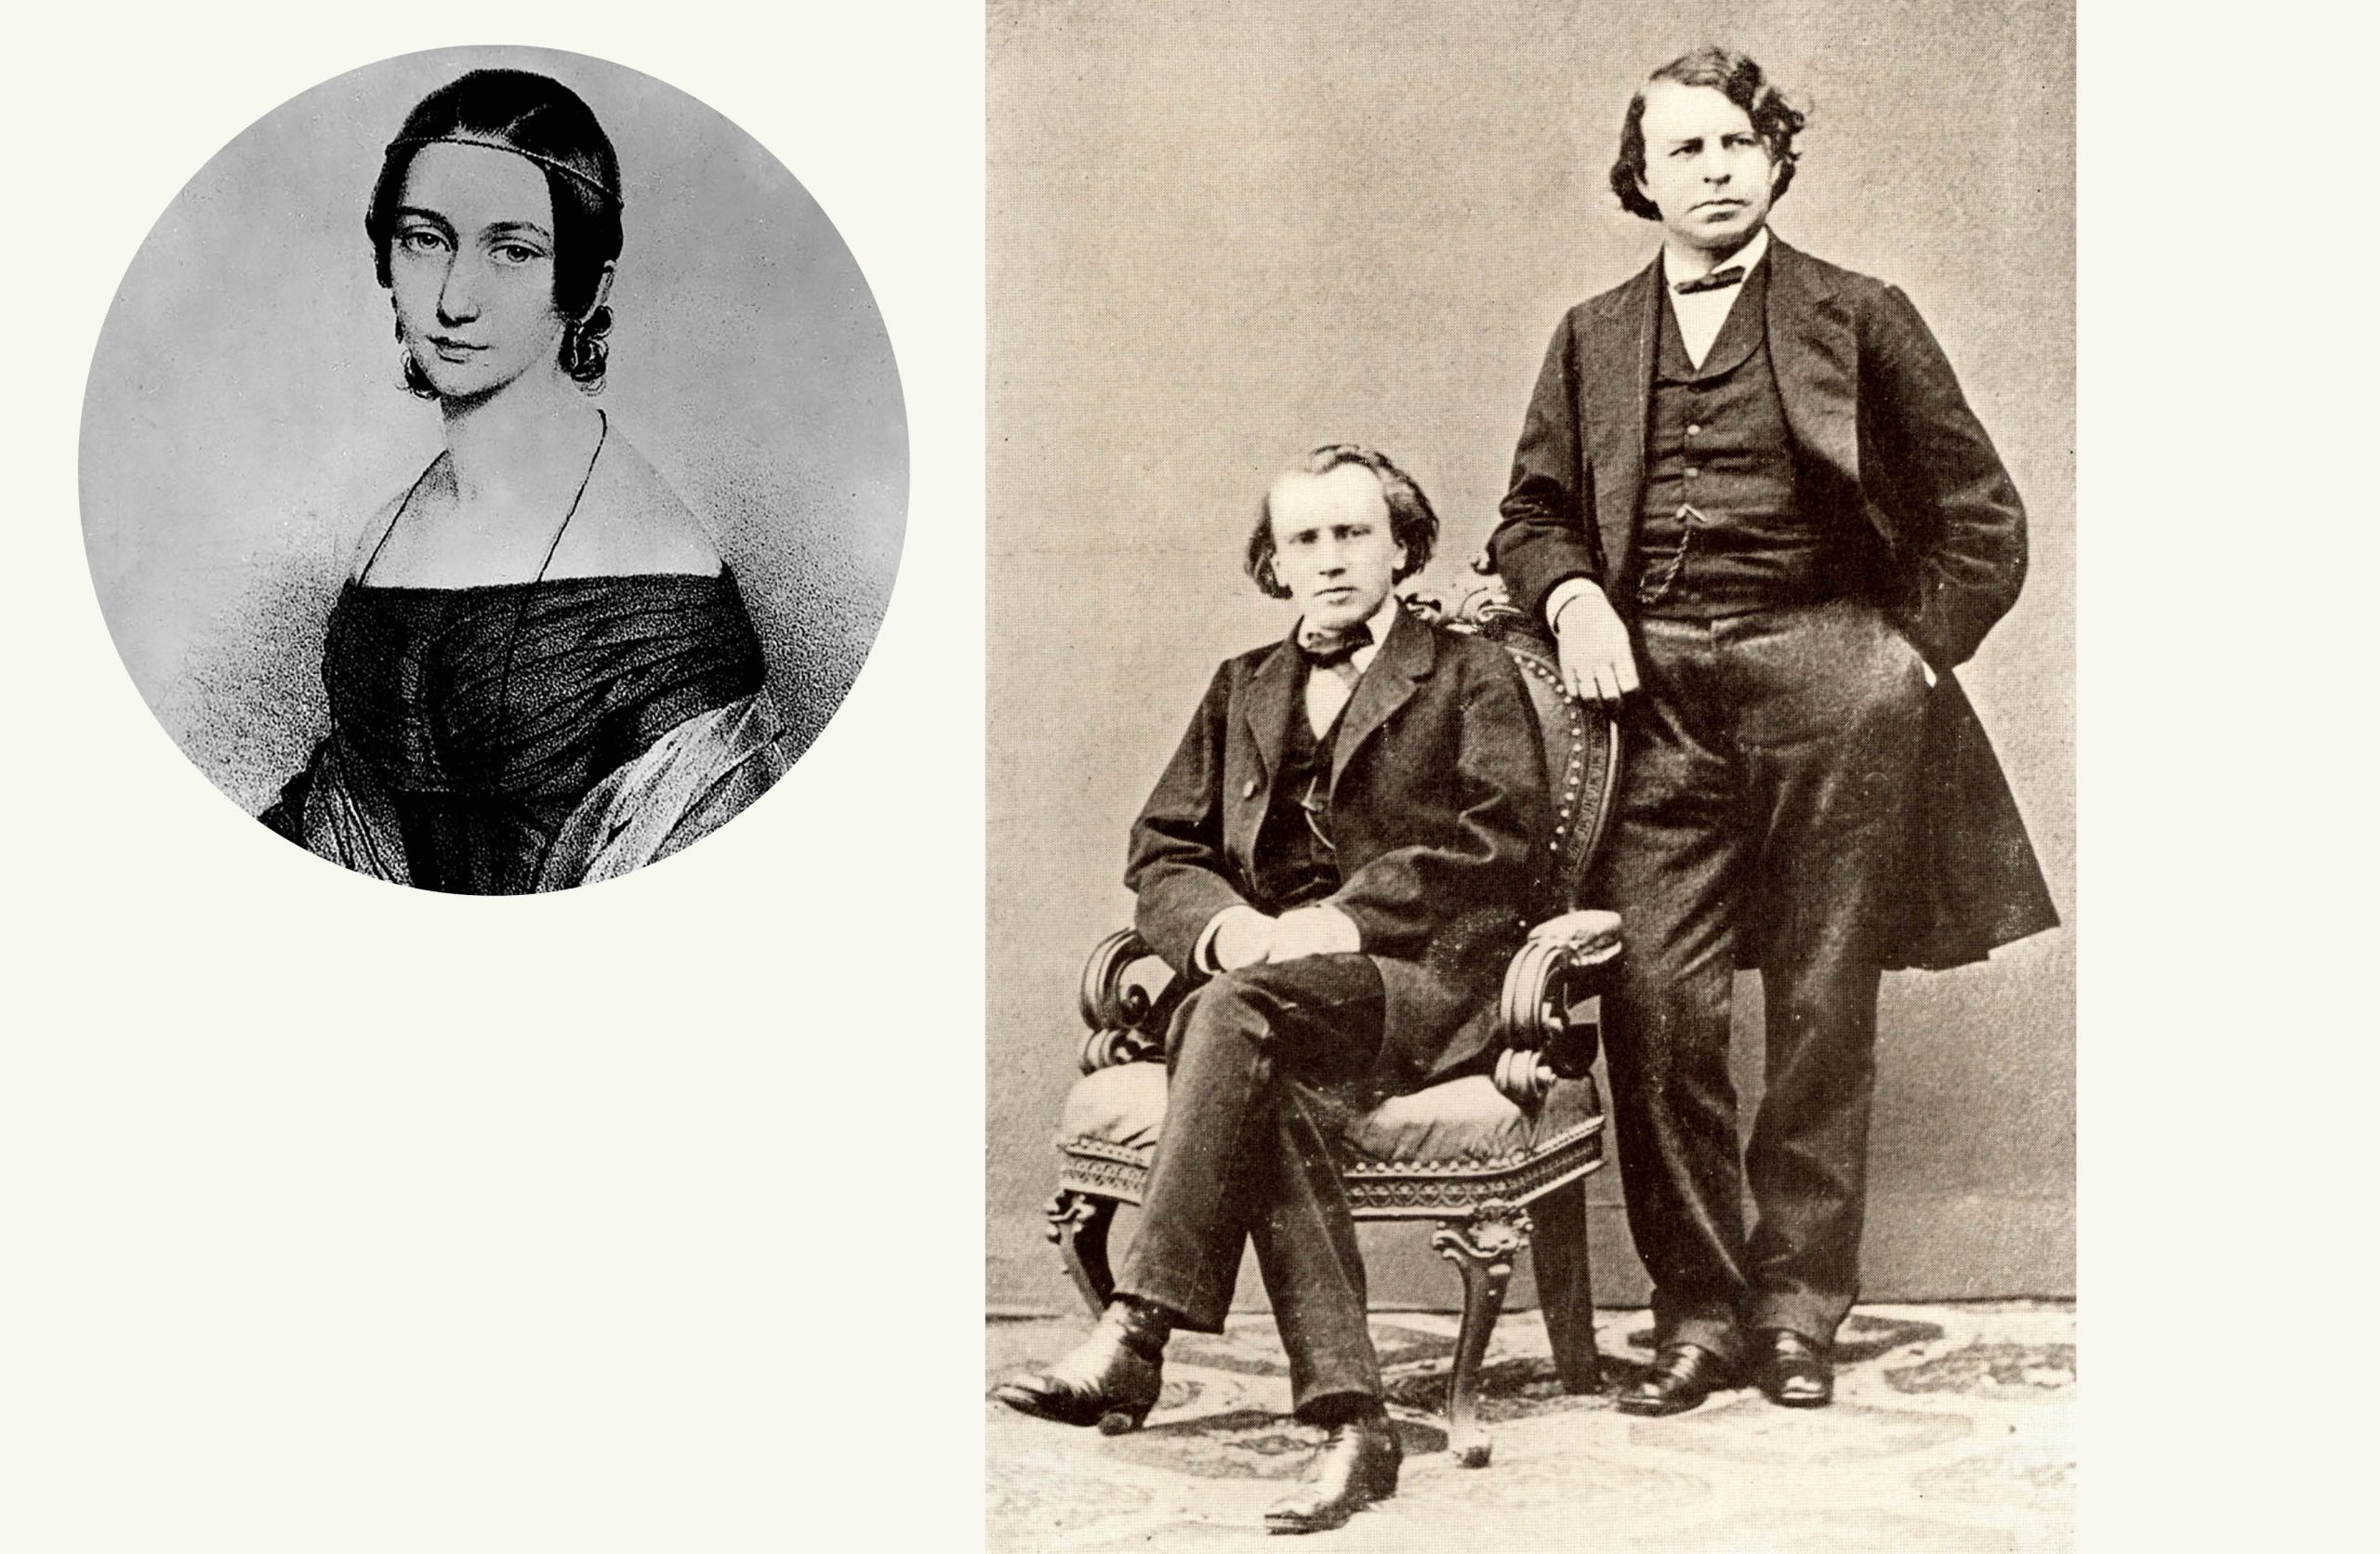 Ett kollage med en bild på Clara Schumann samt ett porträtt på Johannes Brahms och Joseph Joachimsom unga. 